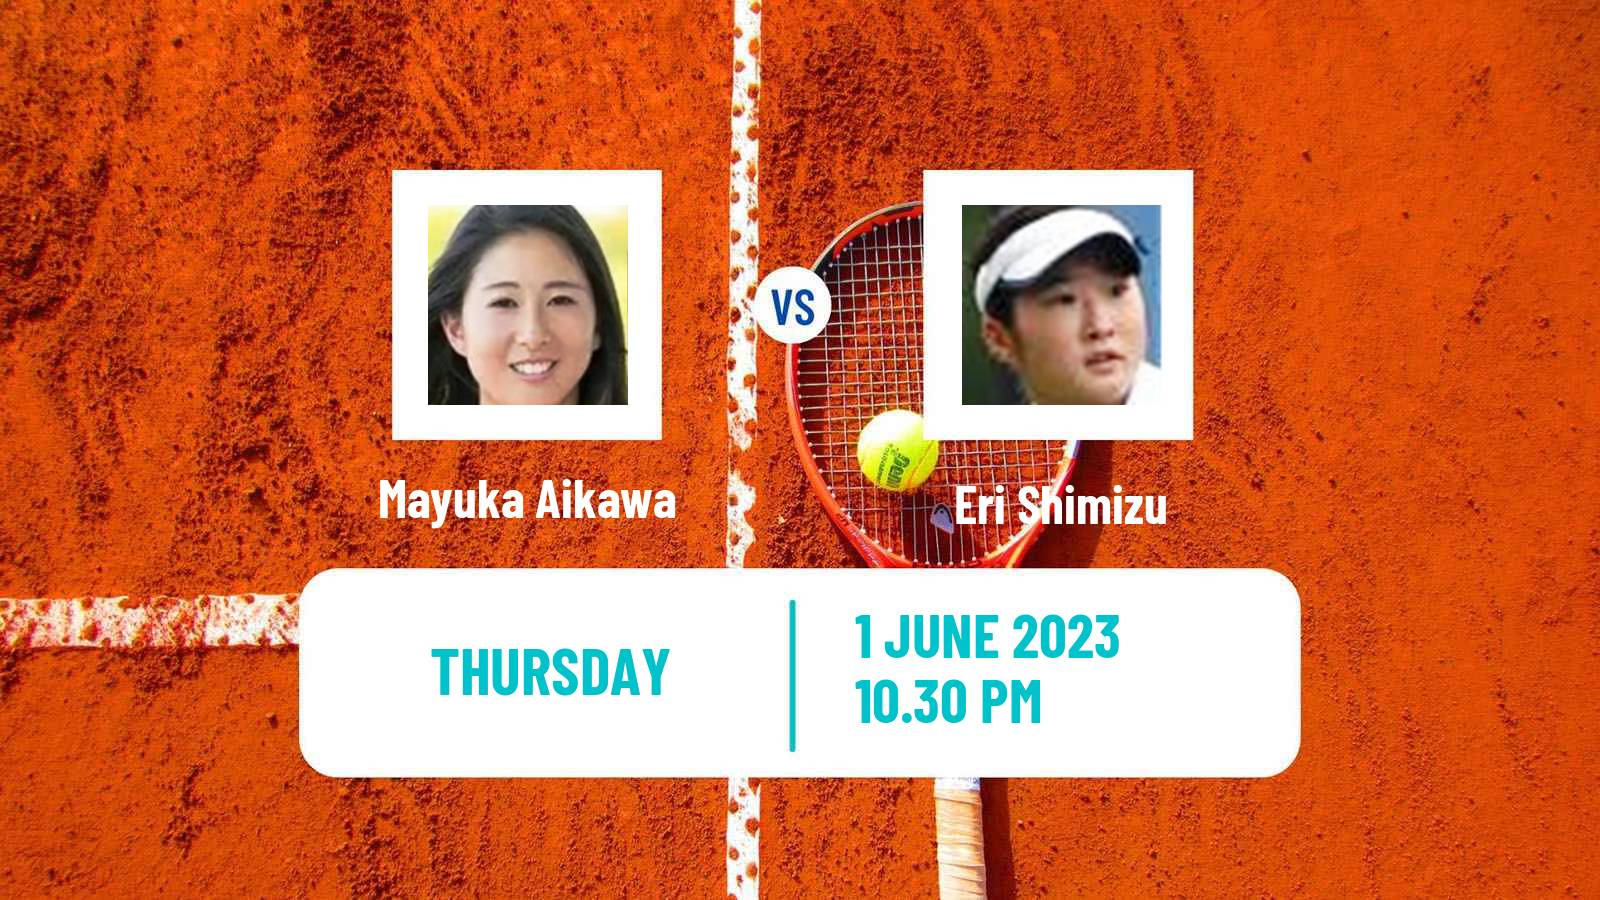 Tennis ITF W25 Tokyo Women Mayuka Aikawa - Eri Shimizu